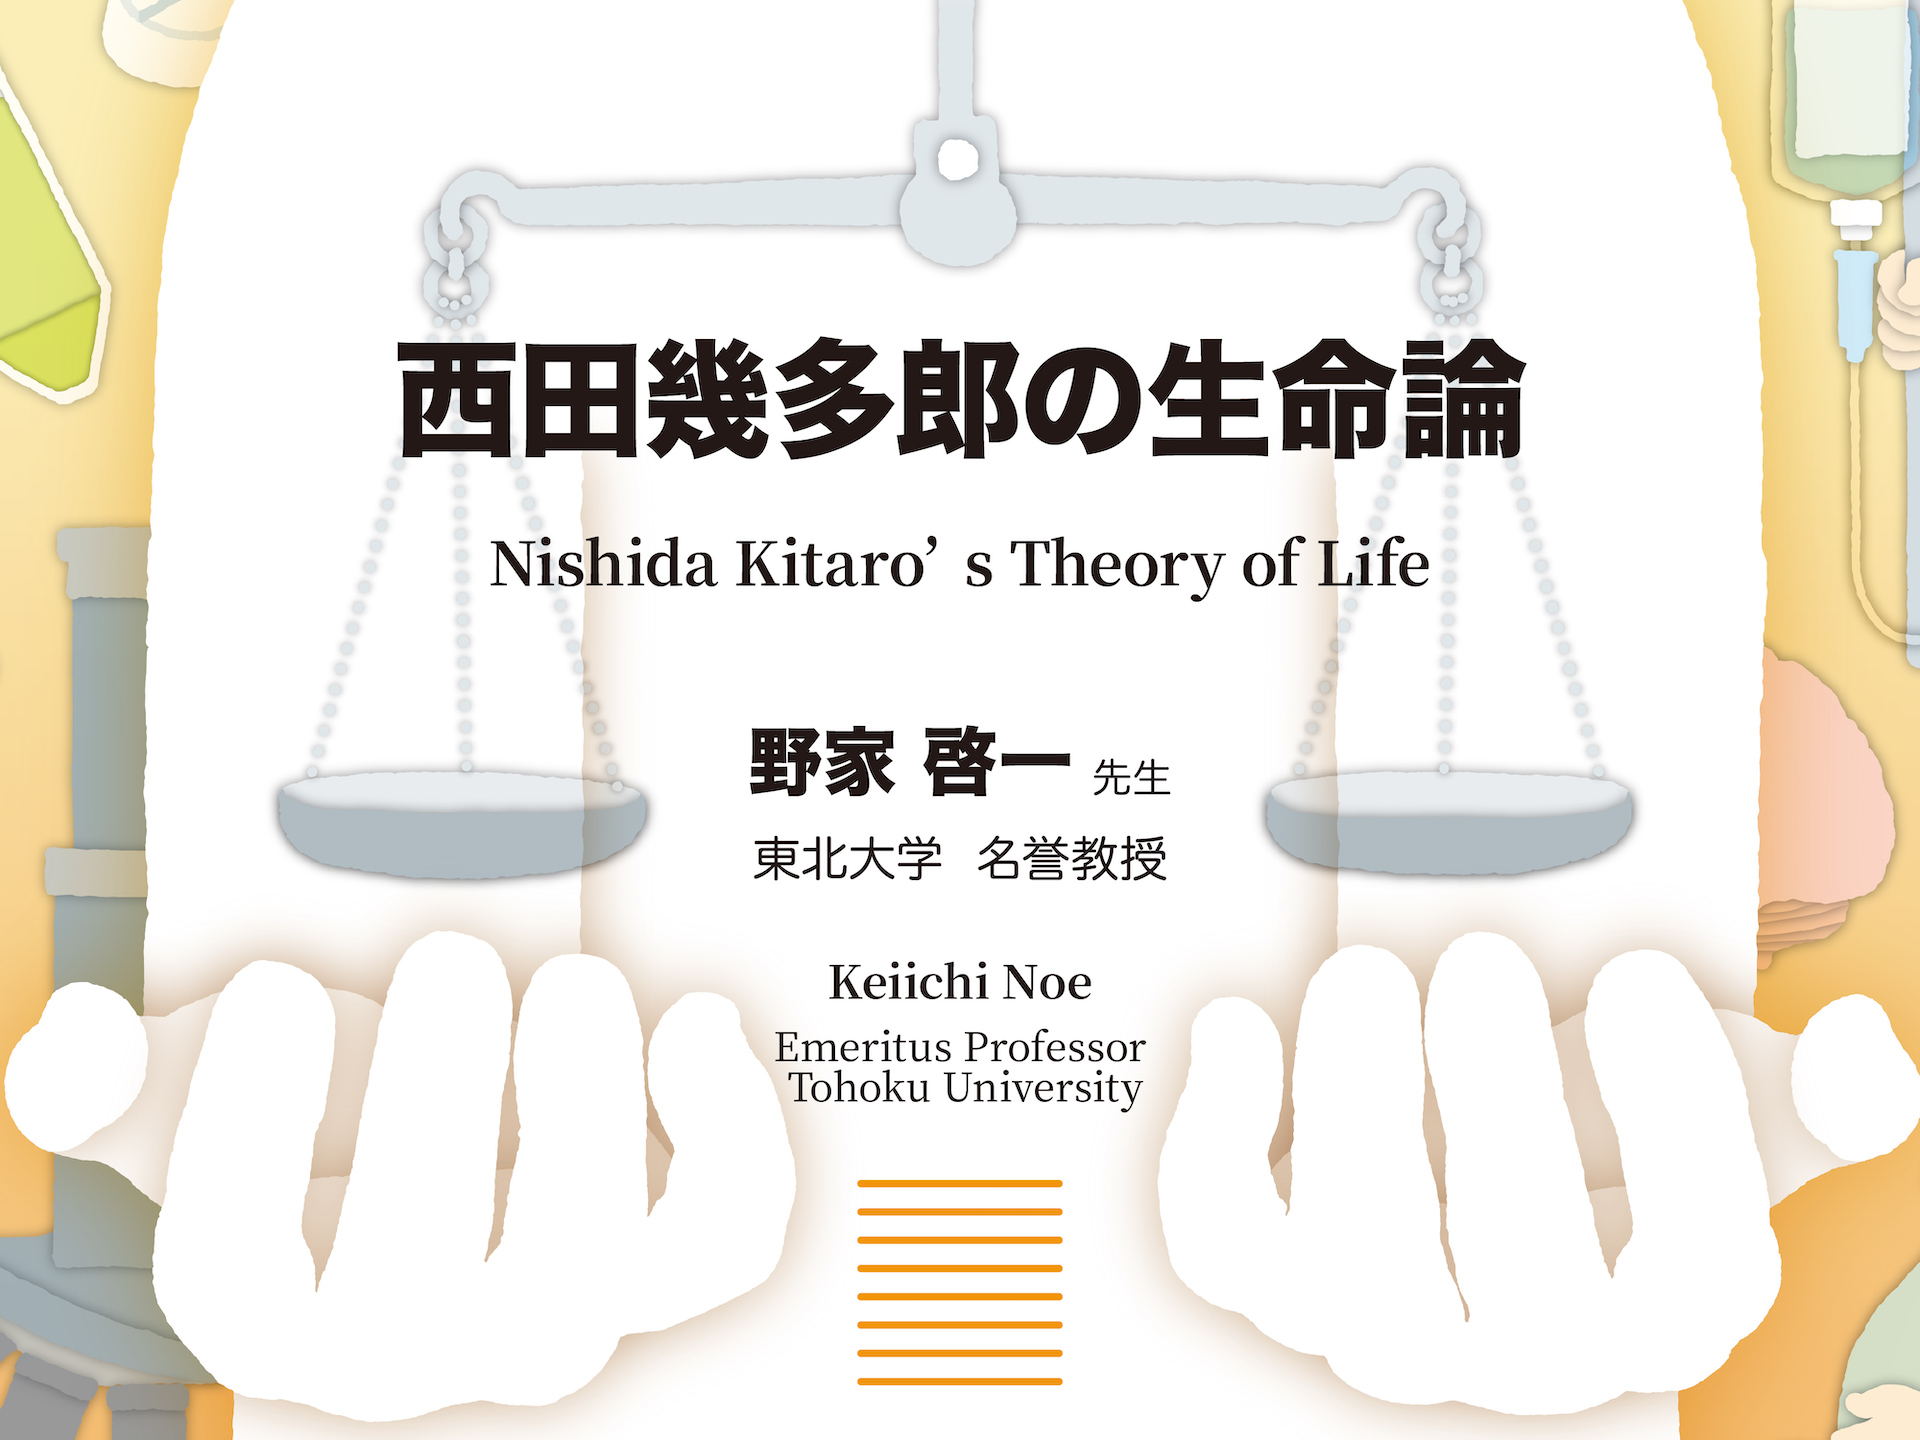 生命倫理講演会 『西田幾多郎の生命論』